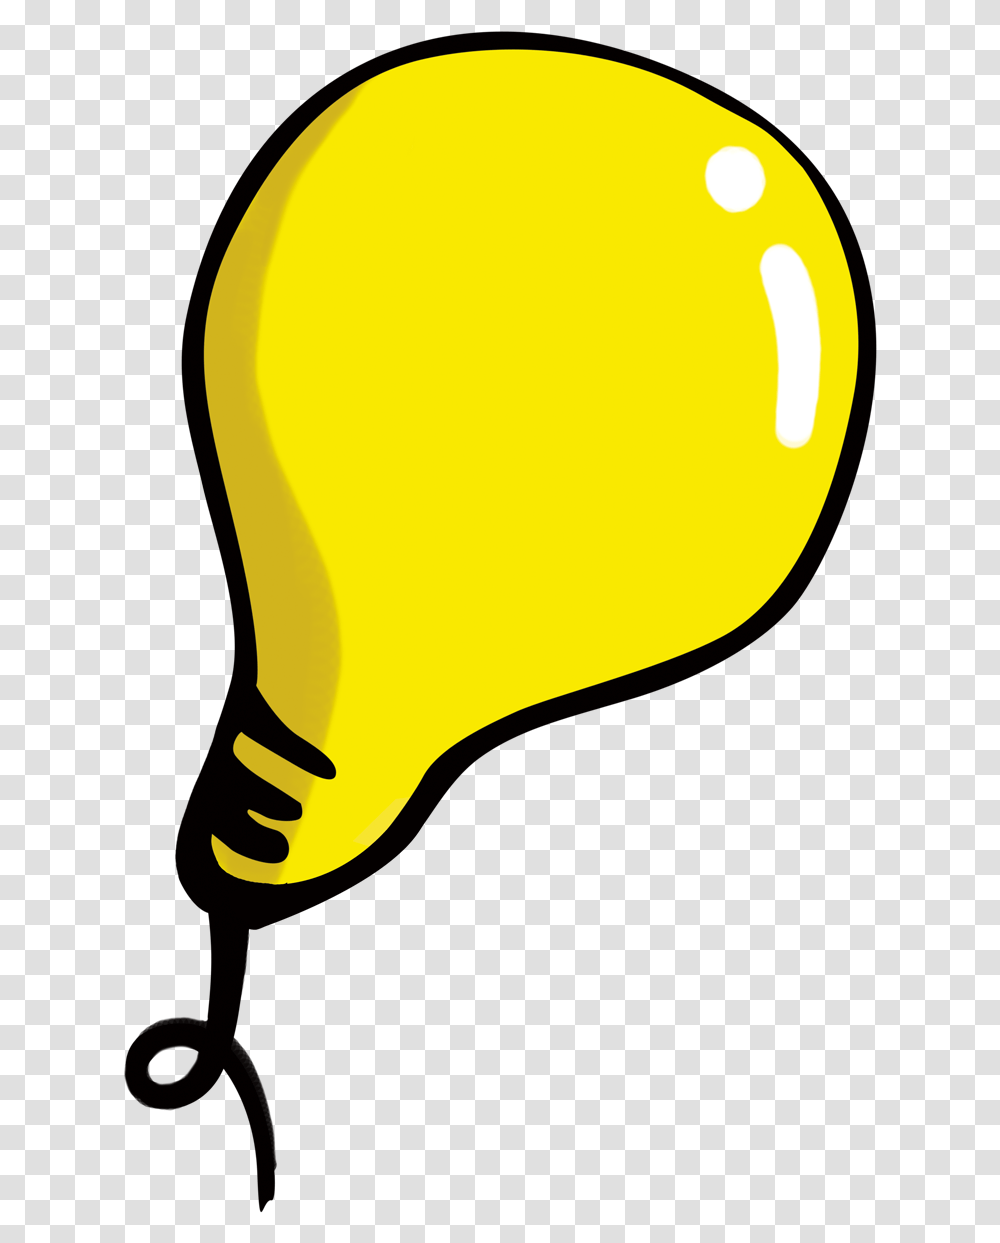 Download Hd Incandescent Light Bulb Clip Art Cartoon Incandescent Light Bulb Transparent Png